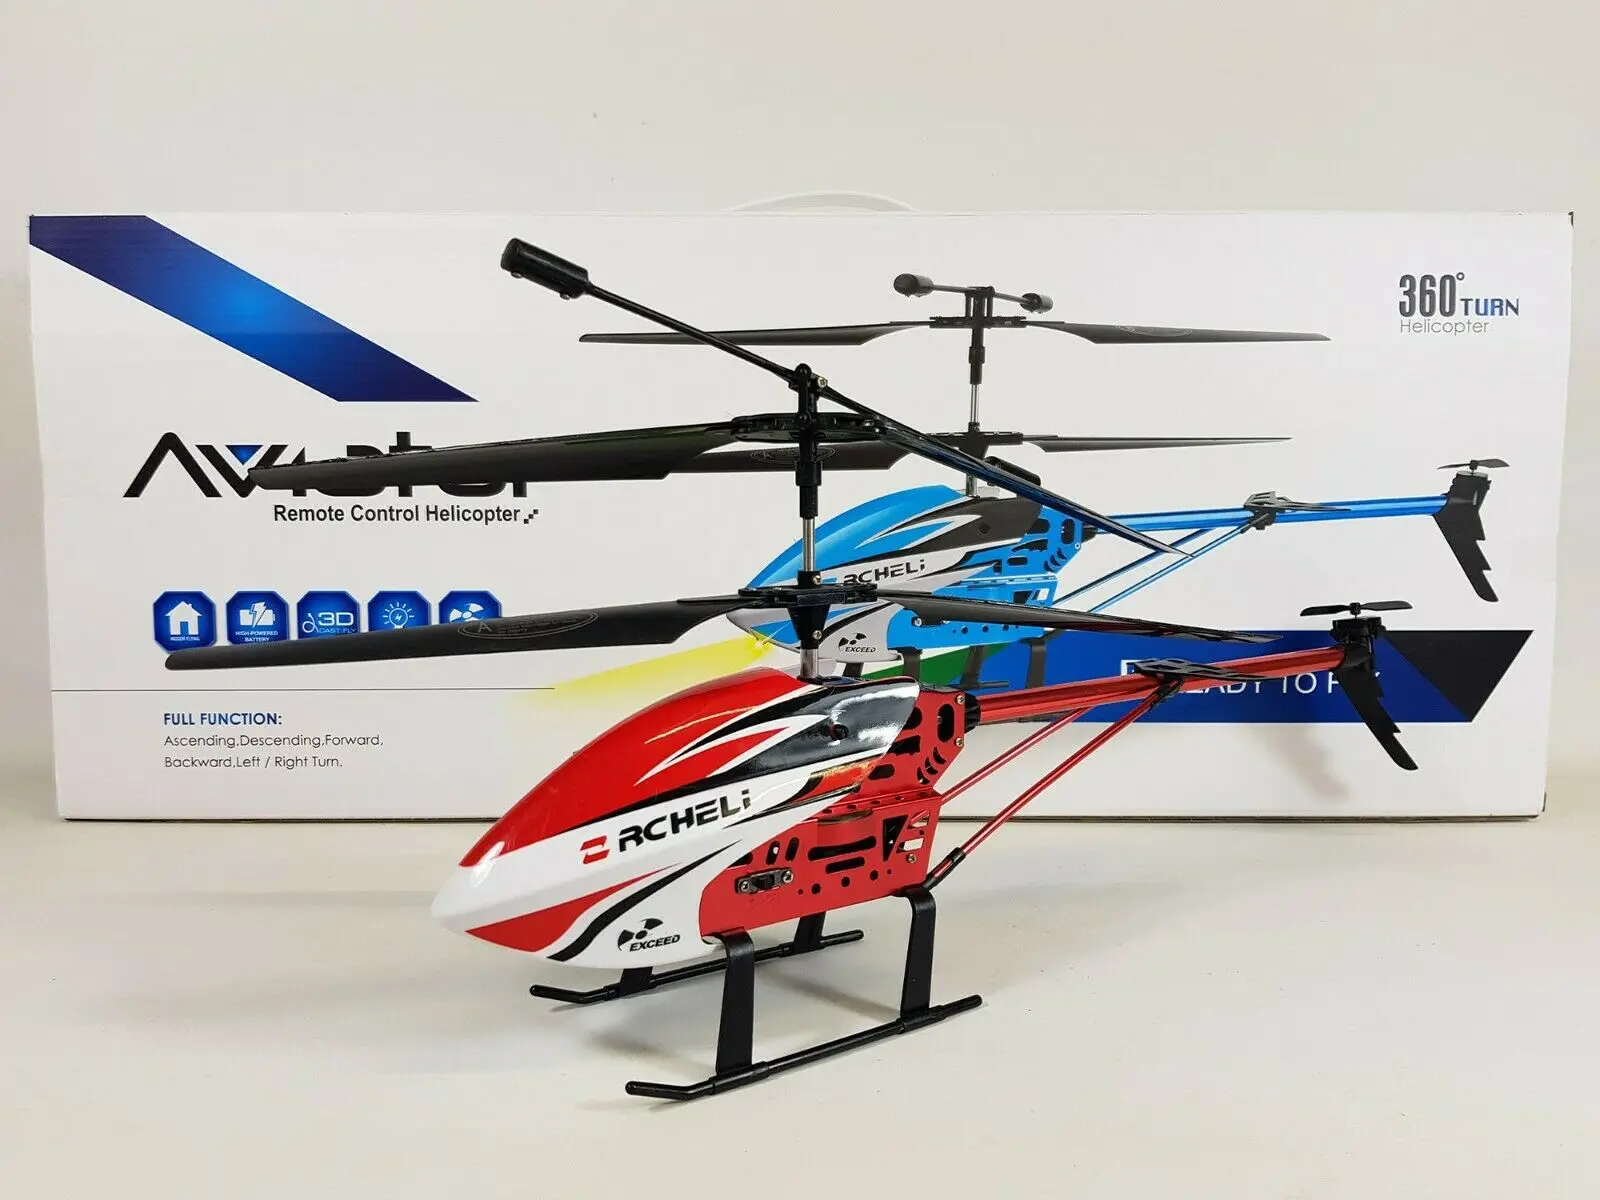 

RC Heli самолёт вертолет гироскоп дистанционное управление самолет мини Дрон игрушка Квадрокоптер